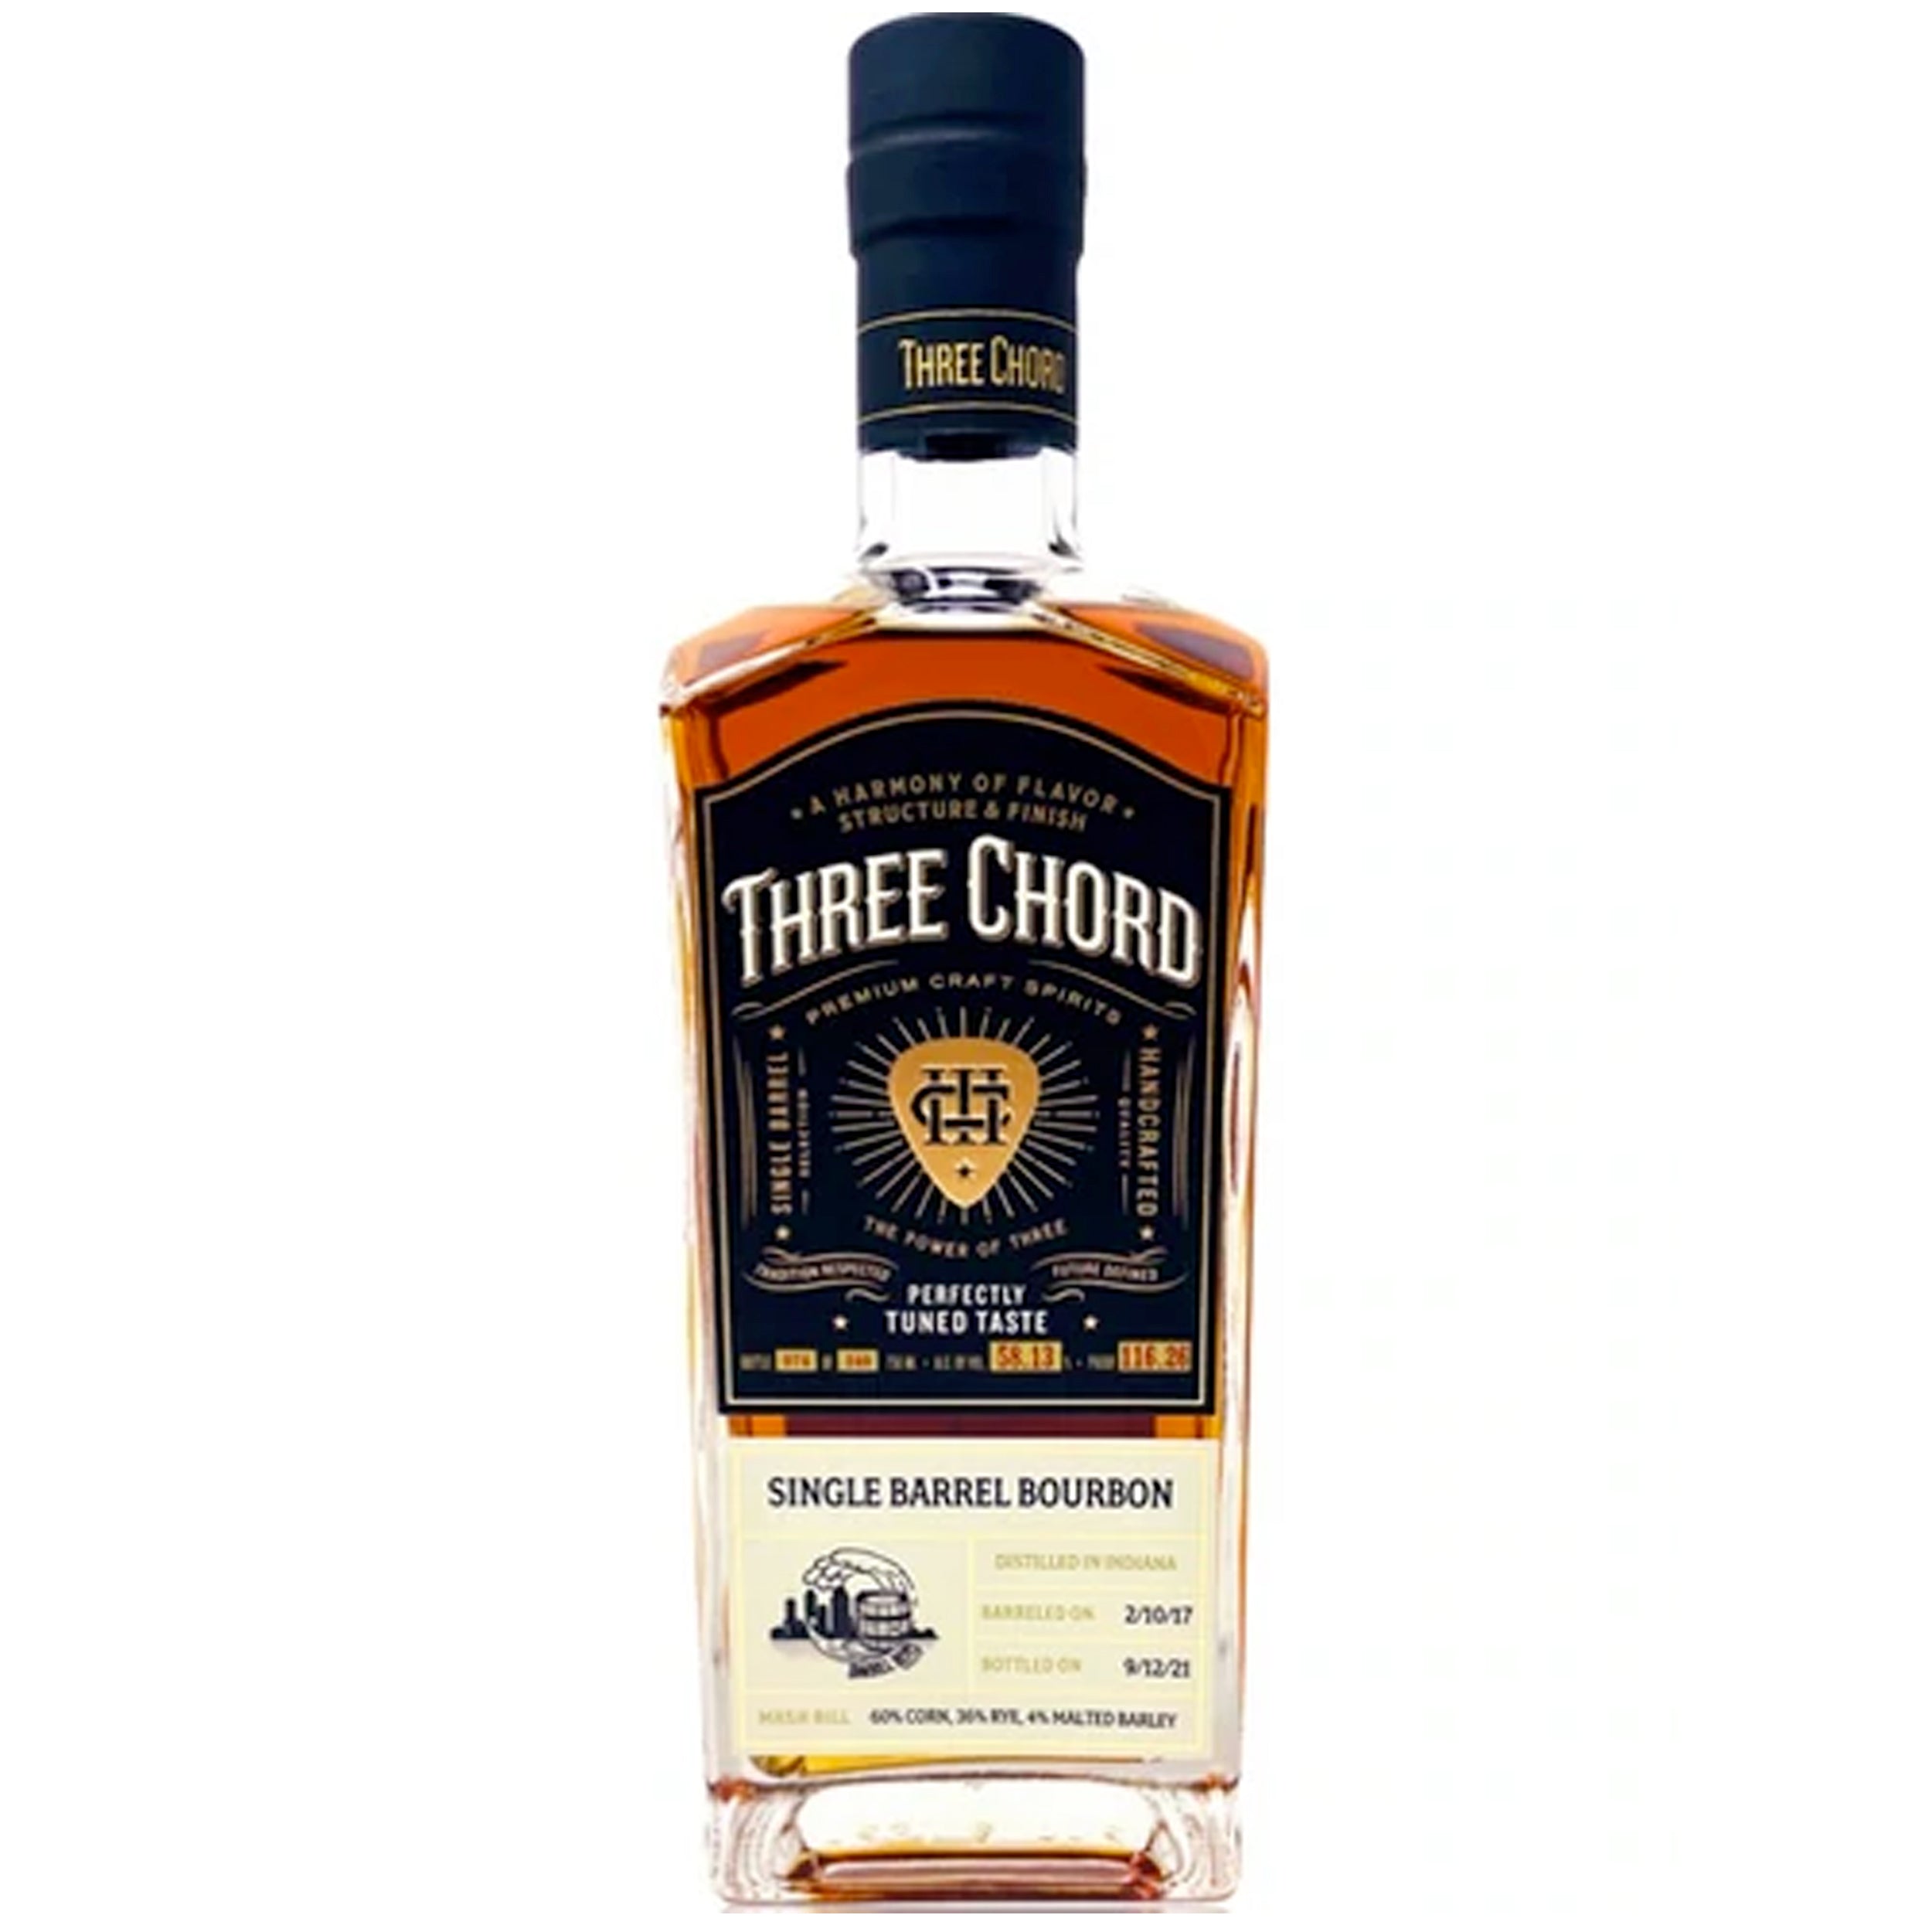 Three Chord Single Barrel Bourbon Whiskey 'San Diego Barrel Boys' Select